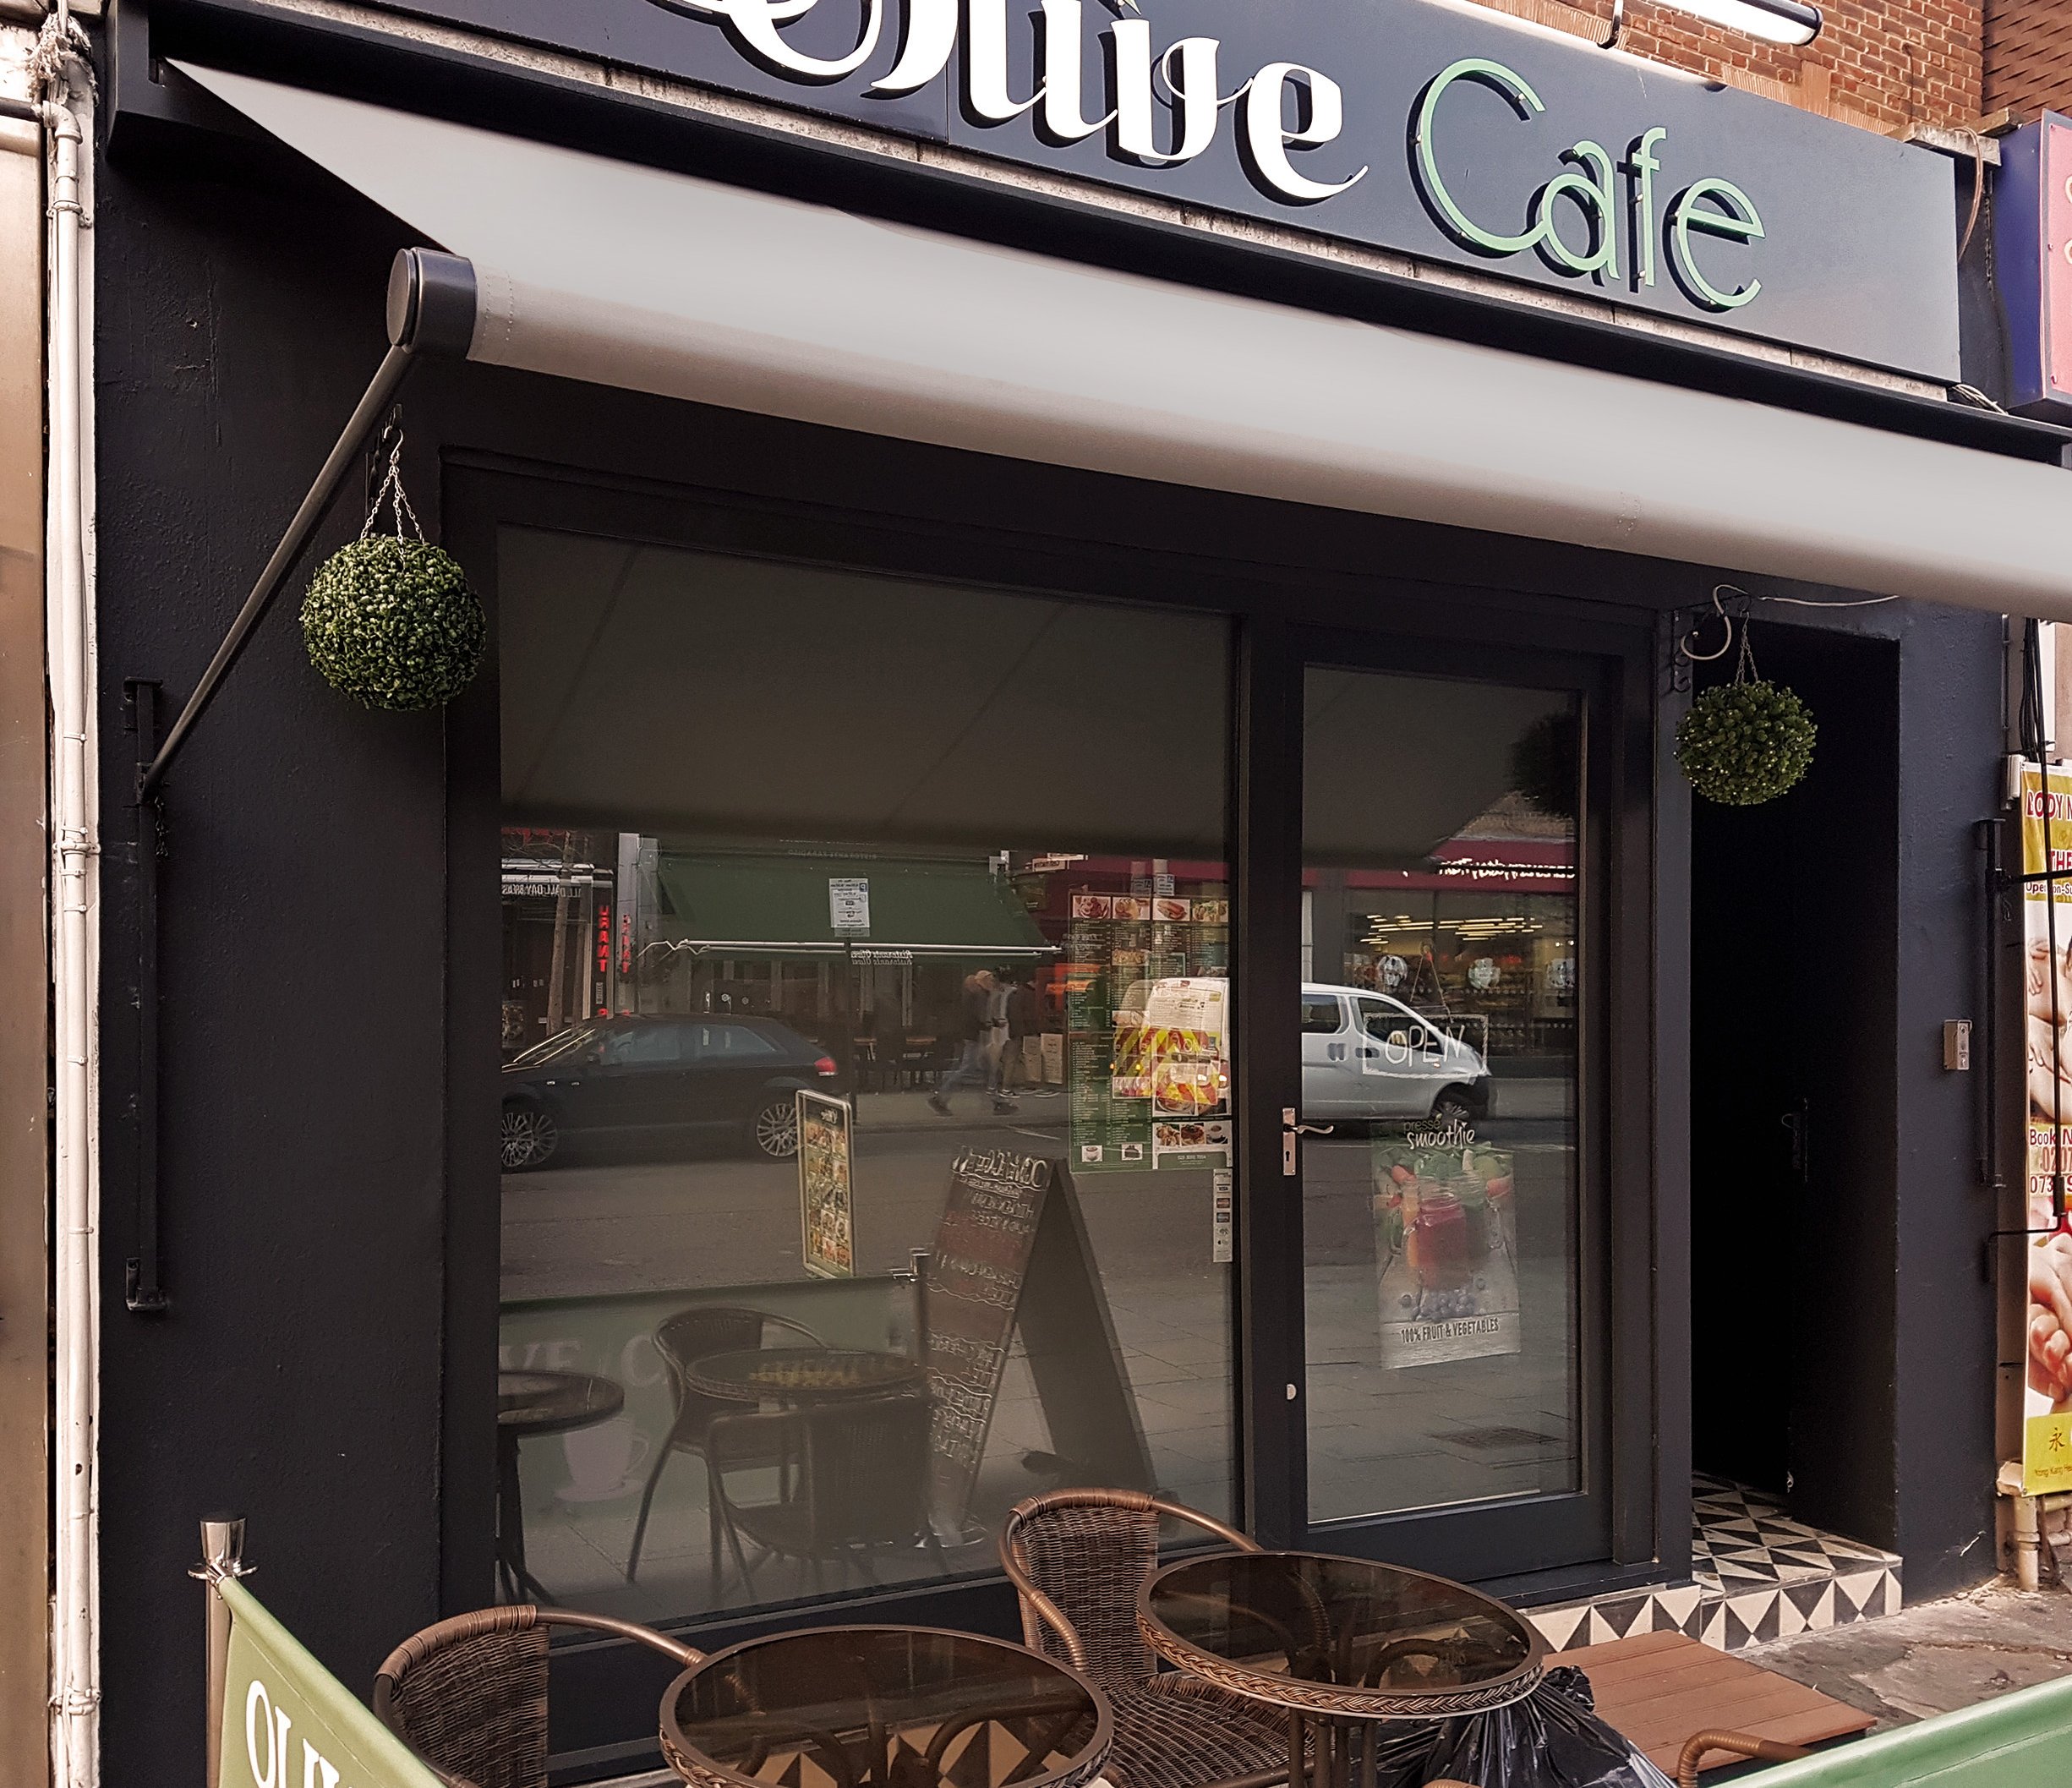 Olive cafe awning 2